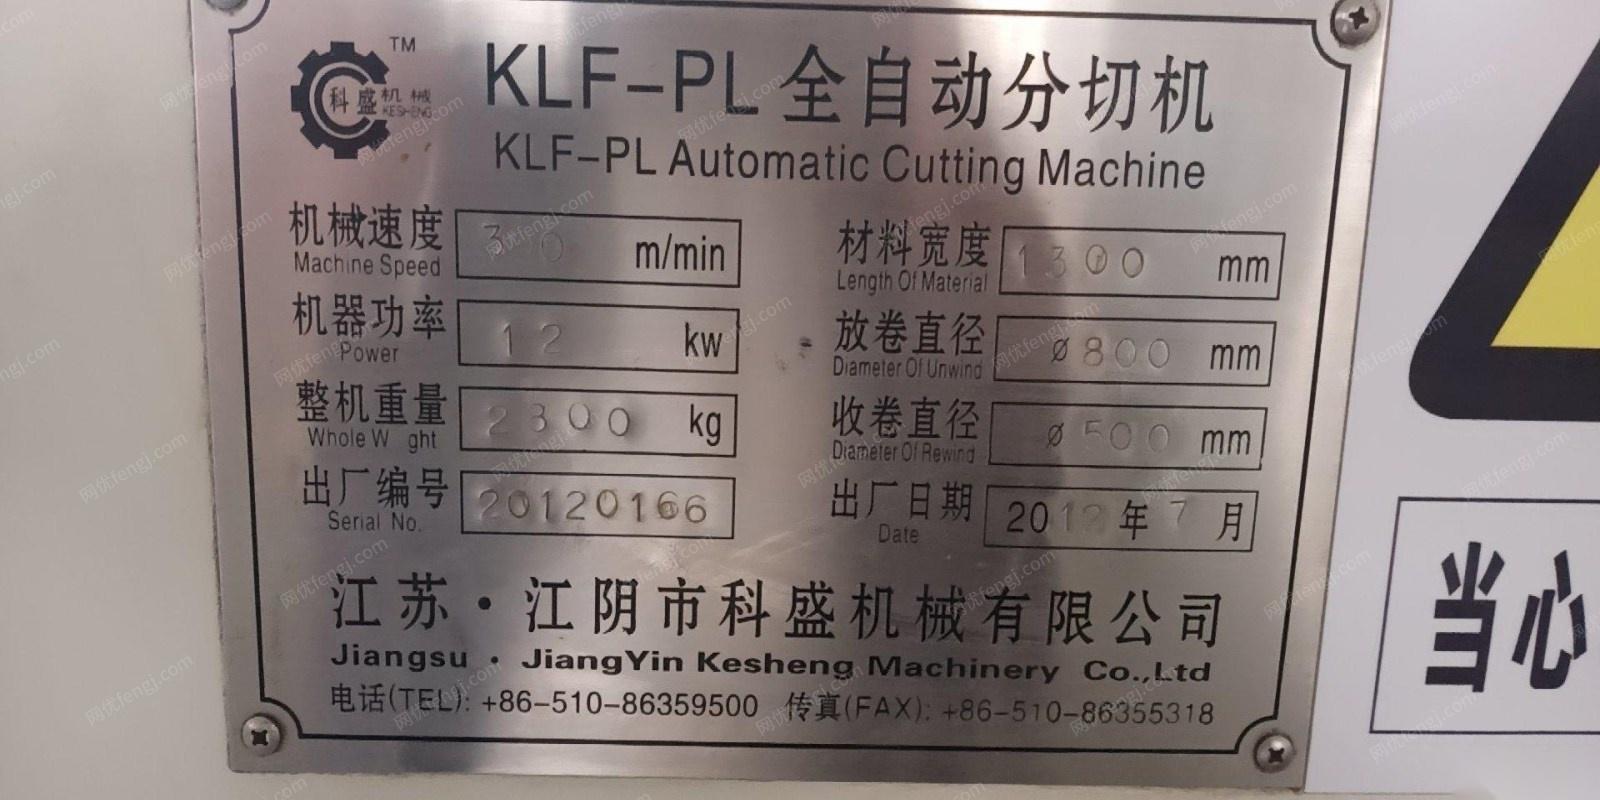 天津转行出售全套塑料印刷设备   印刷机 检品机 分切机 制袋机 都是九成新  看货议价,打包卖.